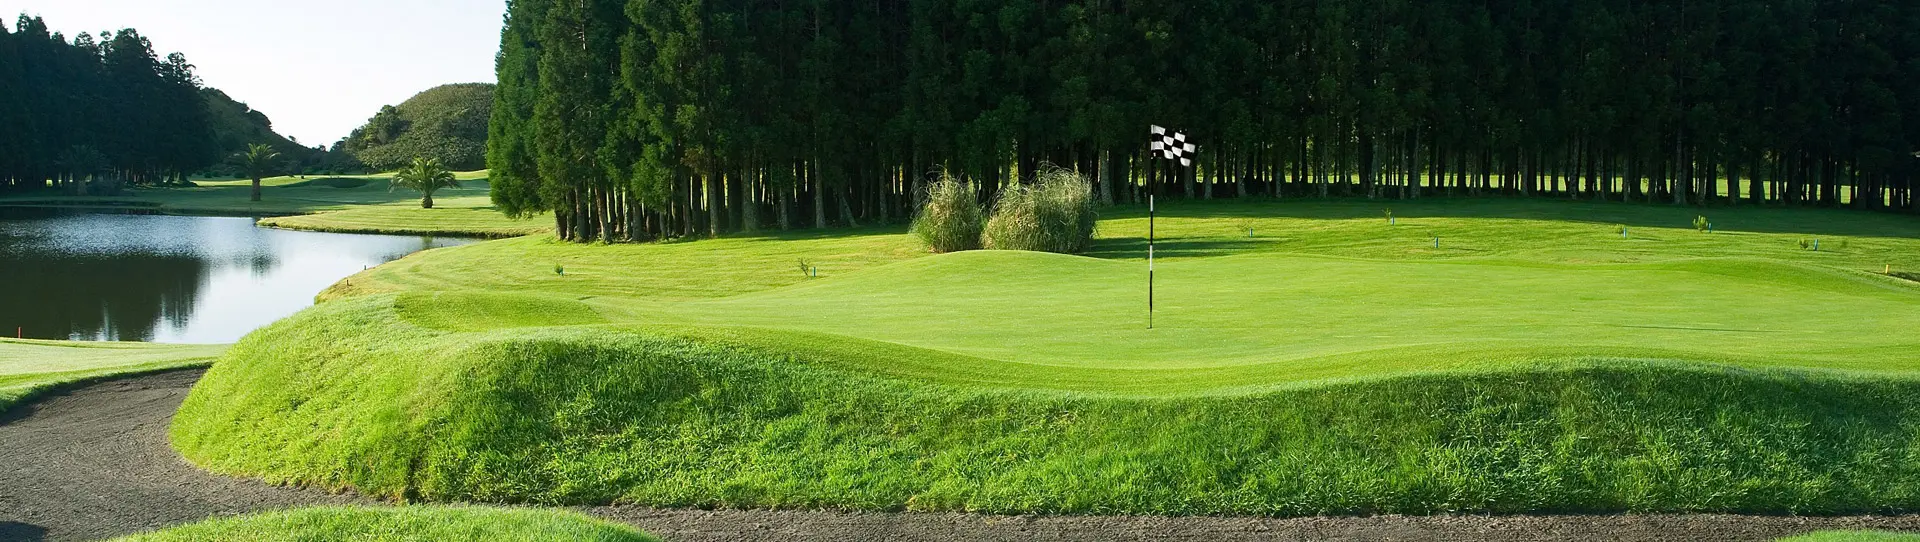 Portugal golf courses - Furnas Golf Course - Photo 3